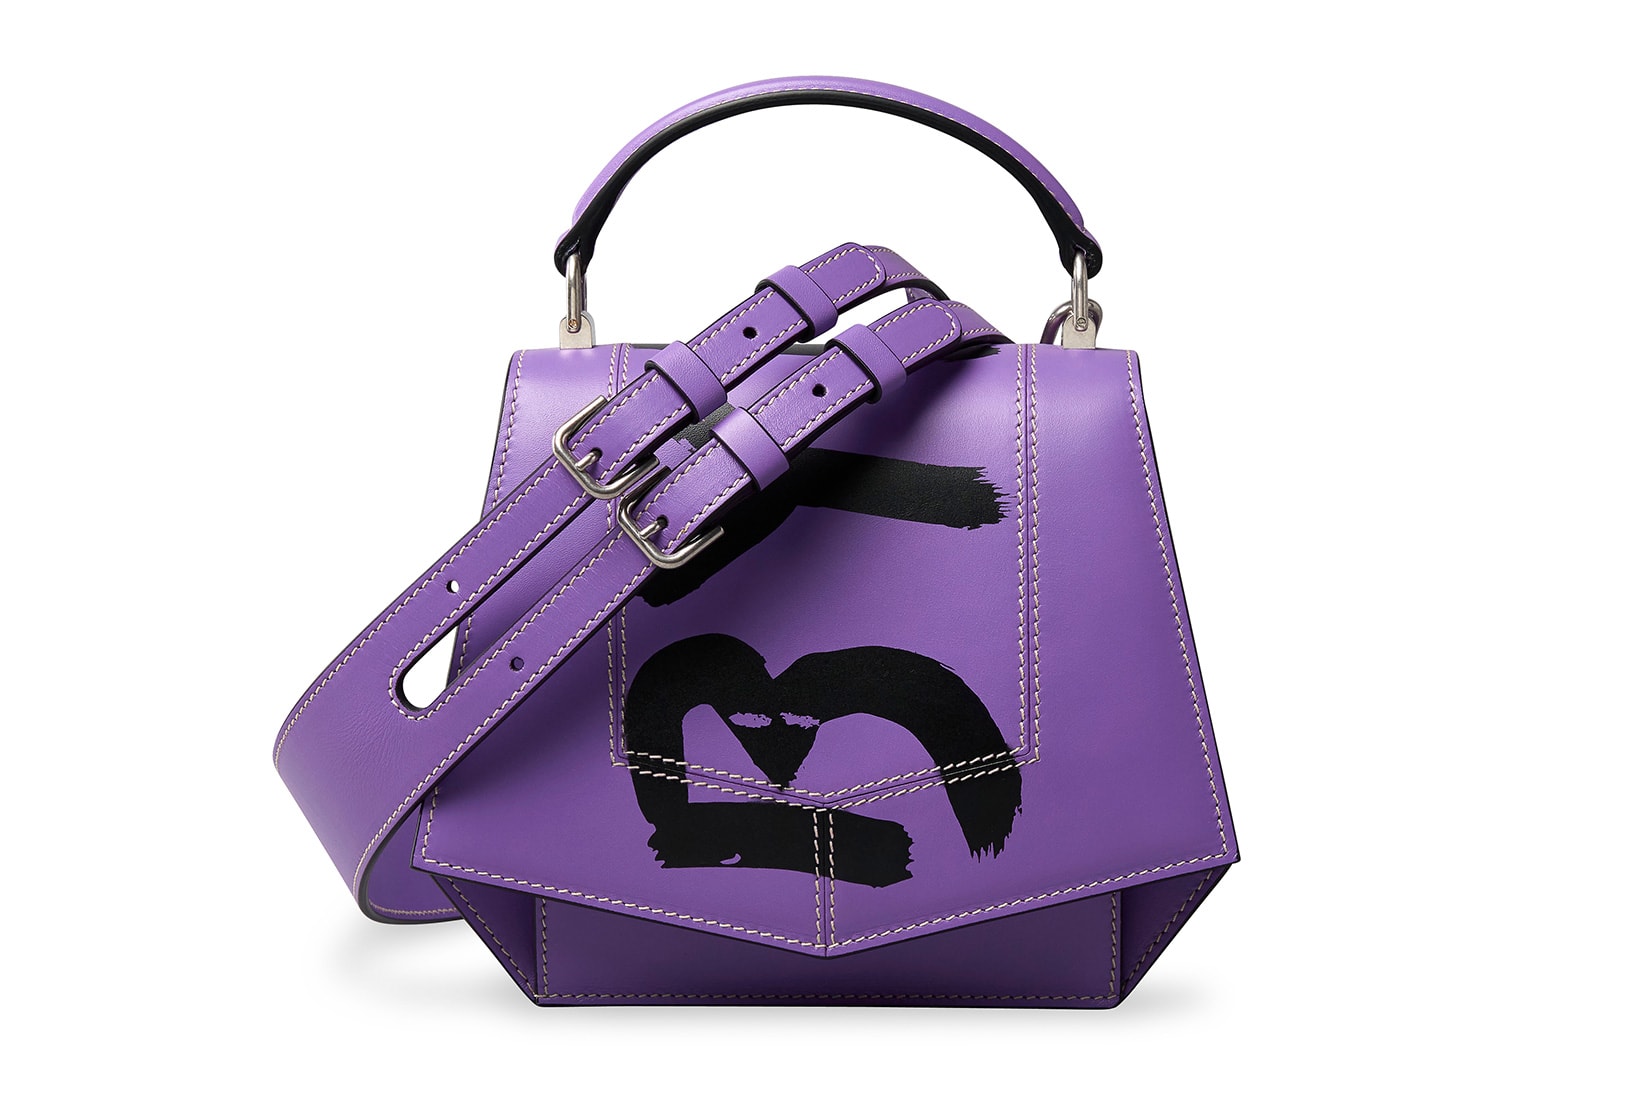 byredo leather goods fall winter phone cases perfume bottle holder purple black